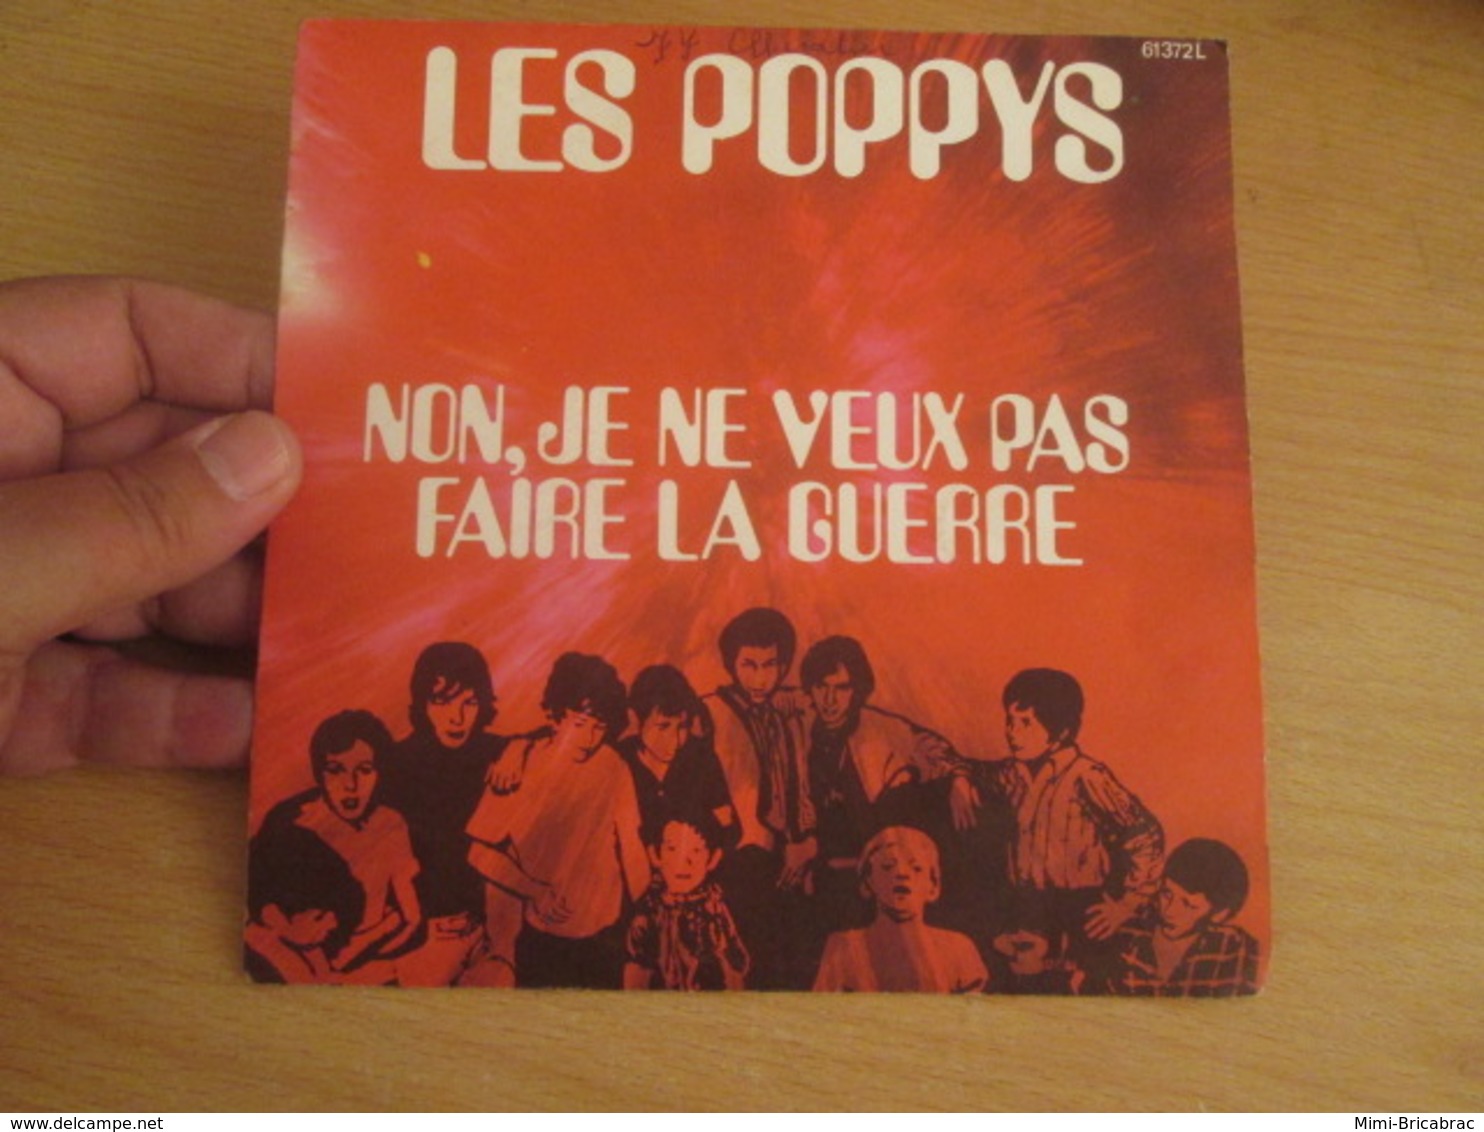 POPPYS Vinyle 45T 7" NOËL 70 - NON JE NE VEUX PAS FAIRE LA GUERRE -BARCLAY 61372 - Wereldmuziek